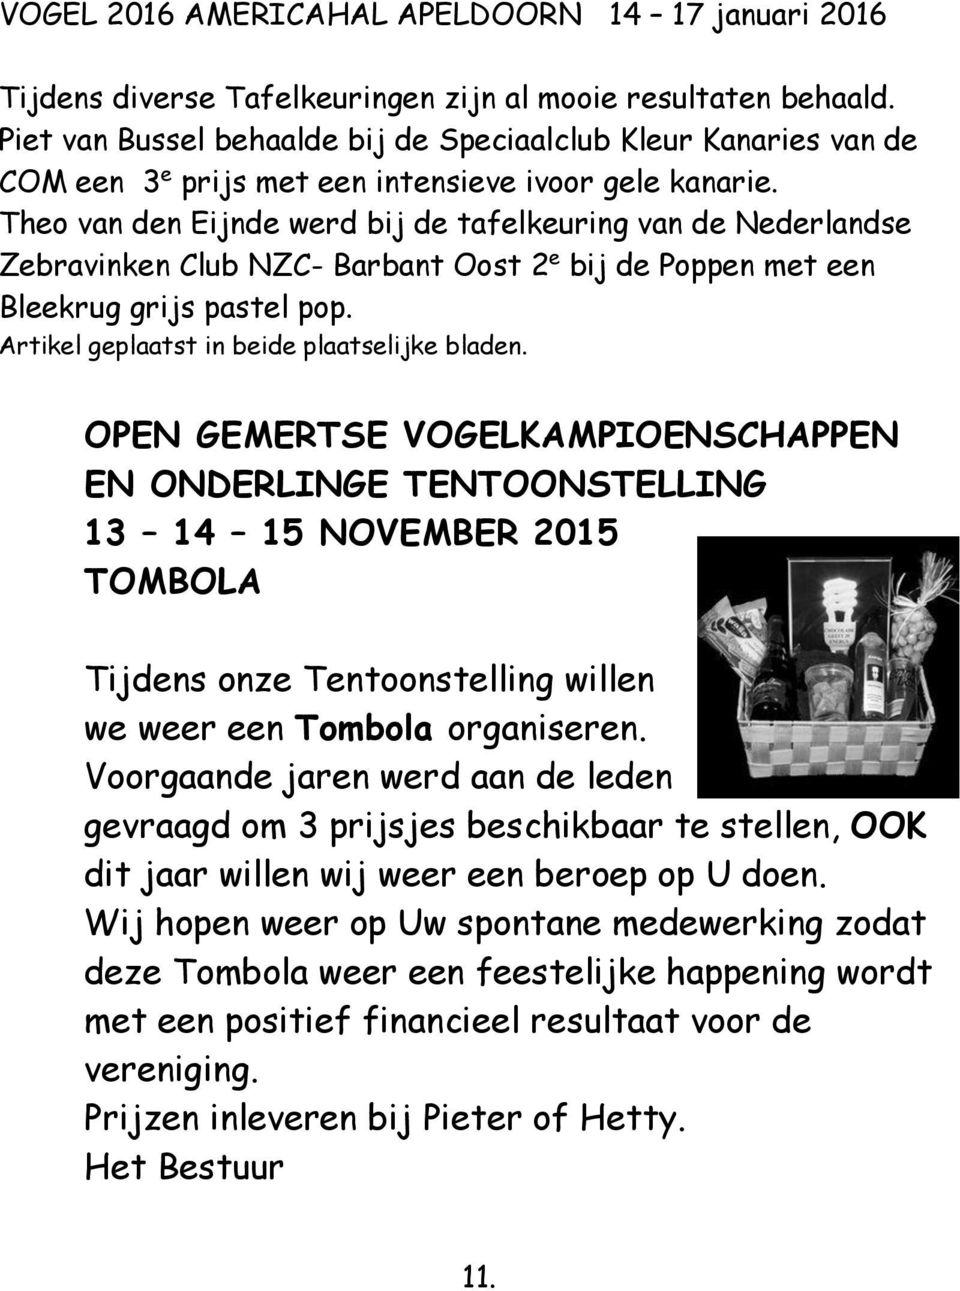 Theo van den Eijnde werd bij de tafelkeuring van de Nederlandse Zebravinken Club NZC- Barbant Oost 2 e bij de Poppen met een Bleekrug grijs pastel pop. Artikel geplaatst in beide plaatselijke bladen.